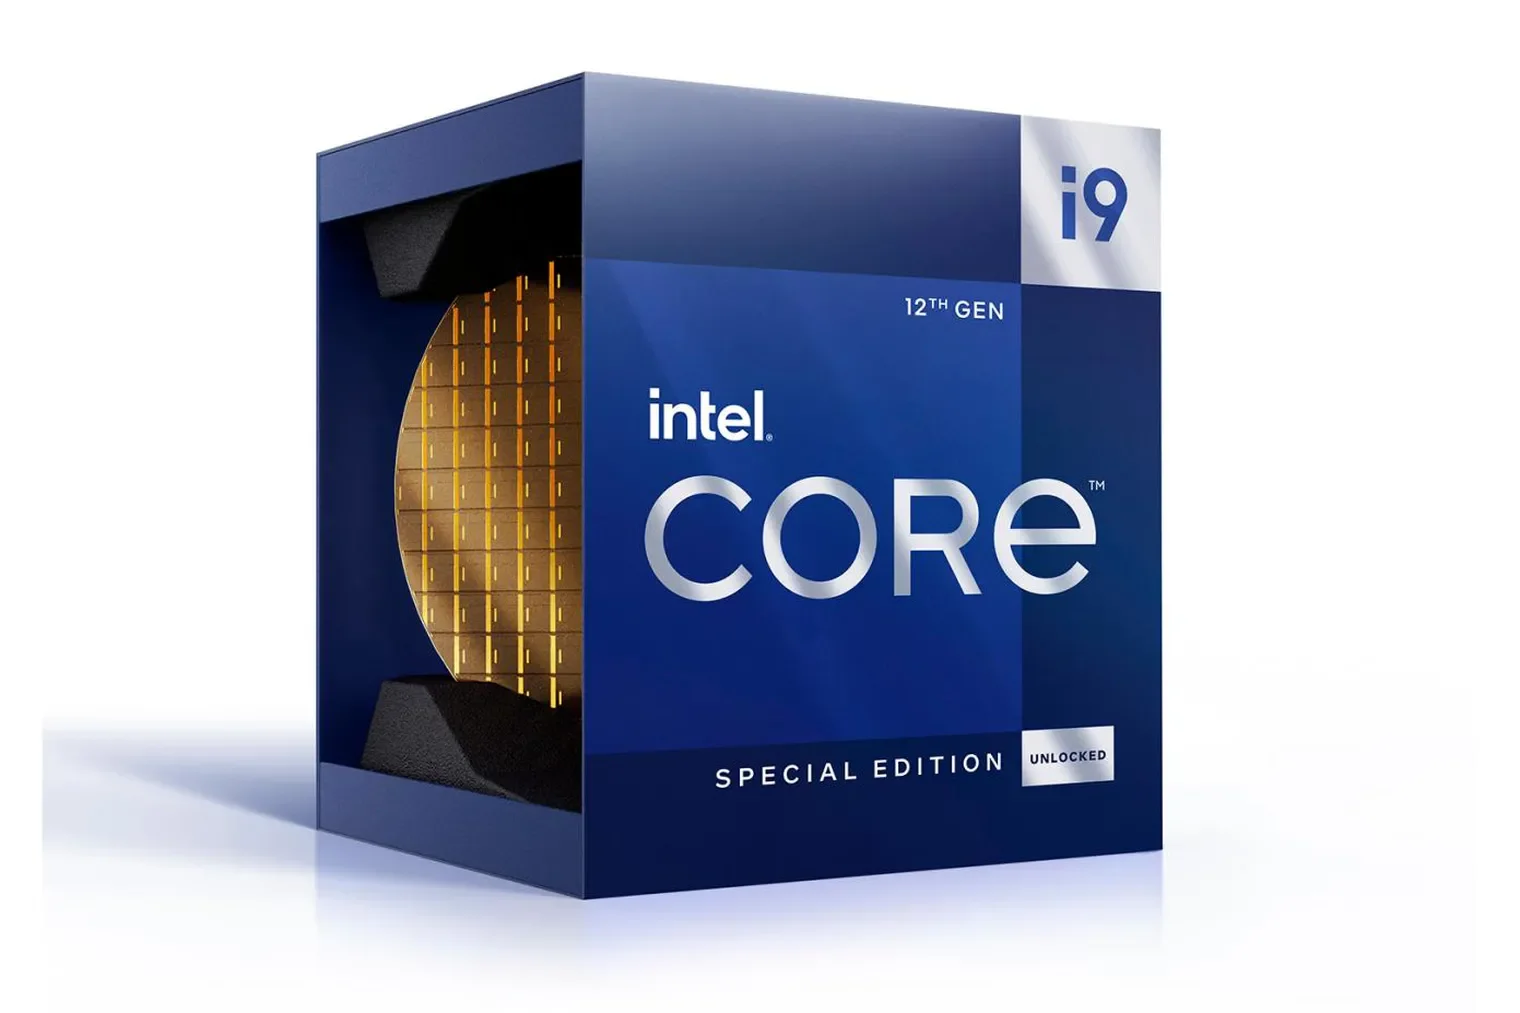 Η Intel παρουσίασε τον Core i9-12900KS για «την απόλυτη εμπειρία gaming»